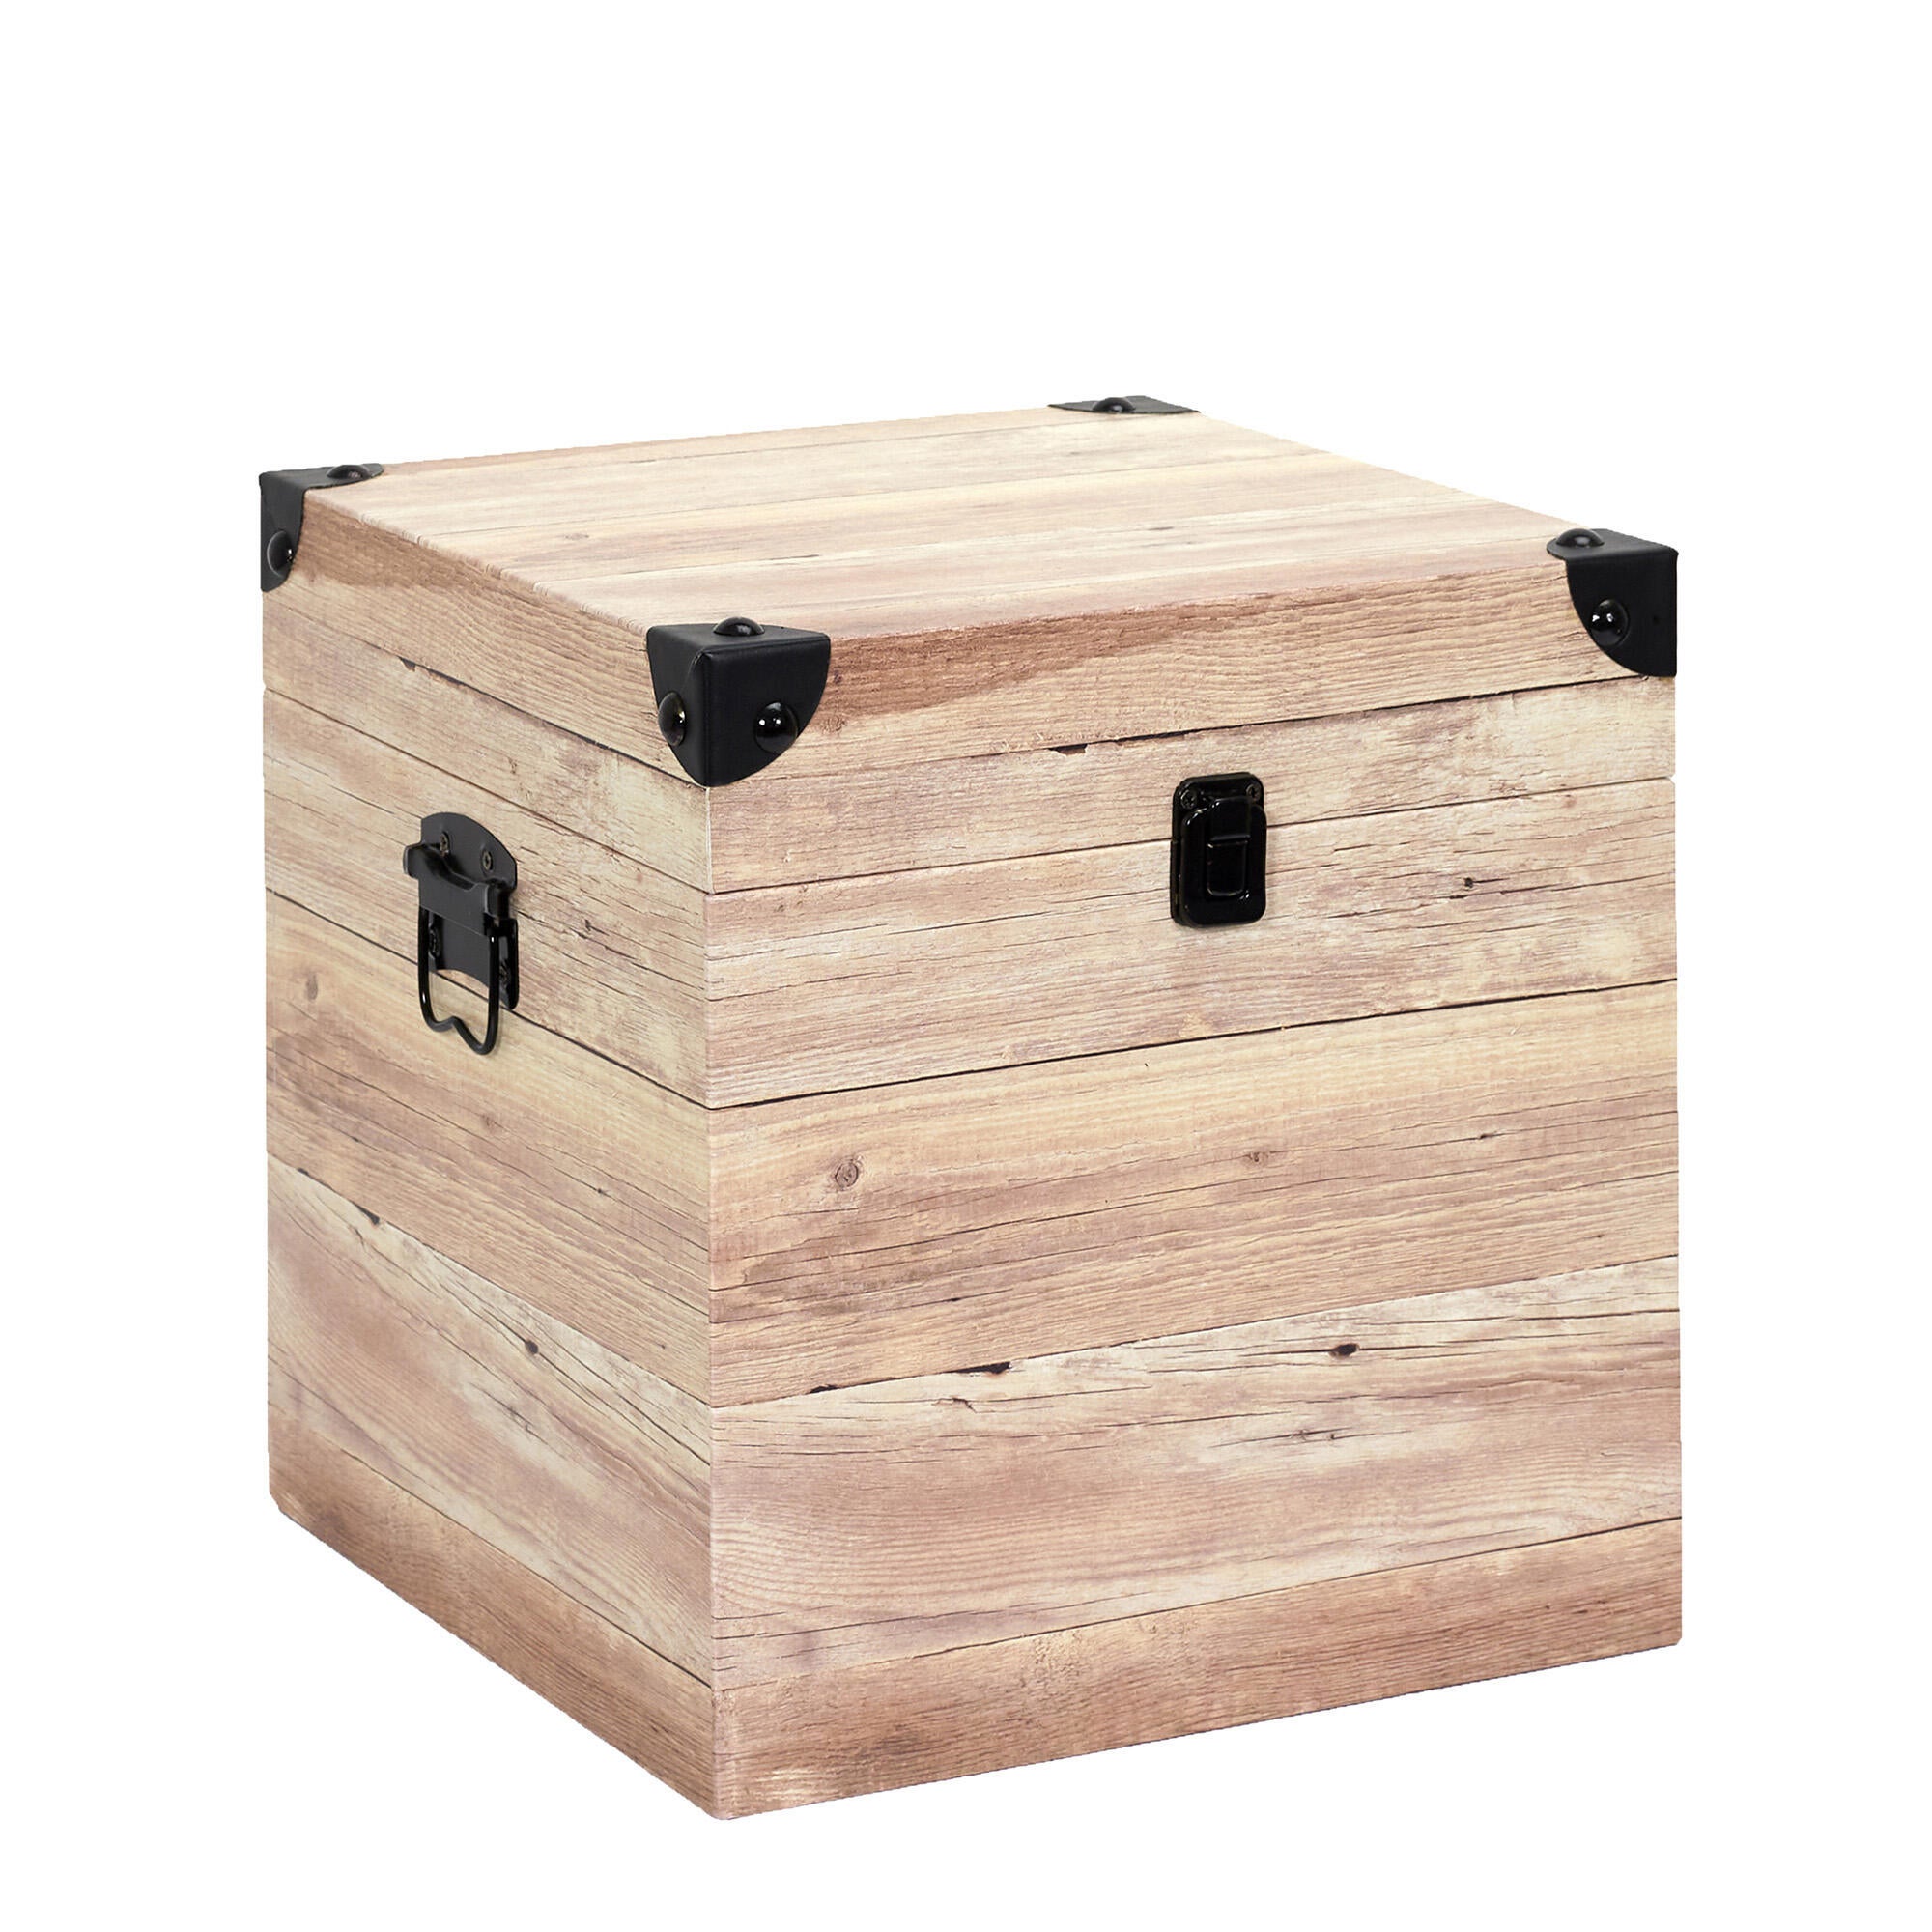 Set de 3 cajas de madera natural, forma de baúl, juego cajas